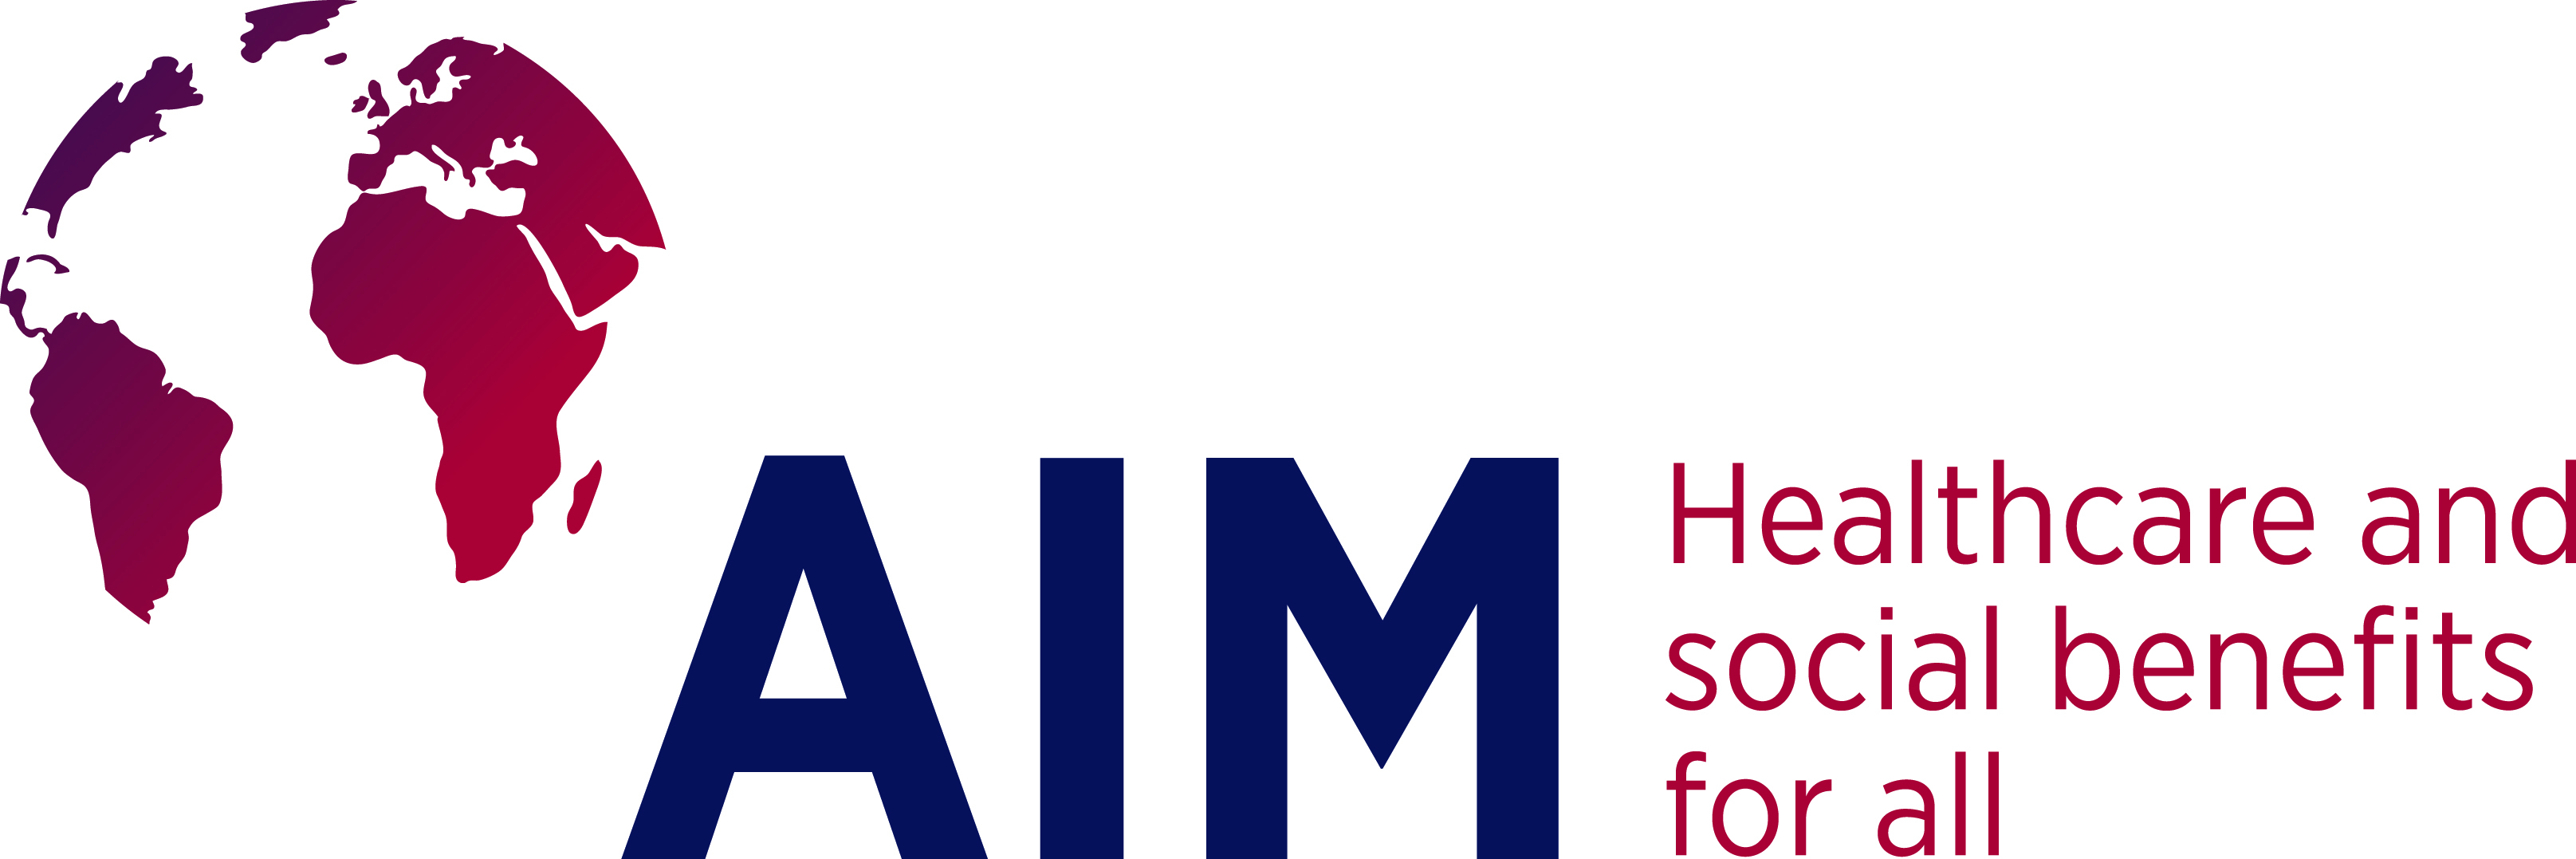 Logo Association Internationale de la Mutualité (AIM)